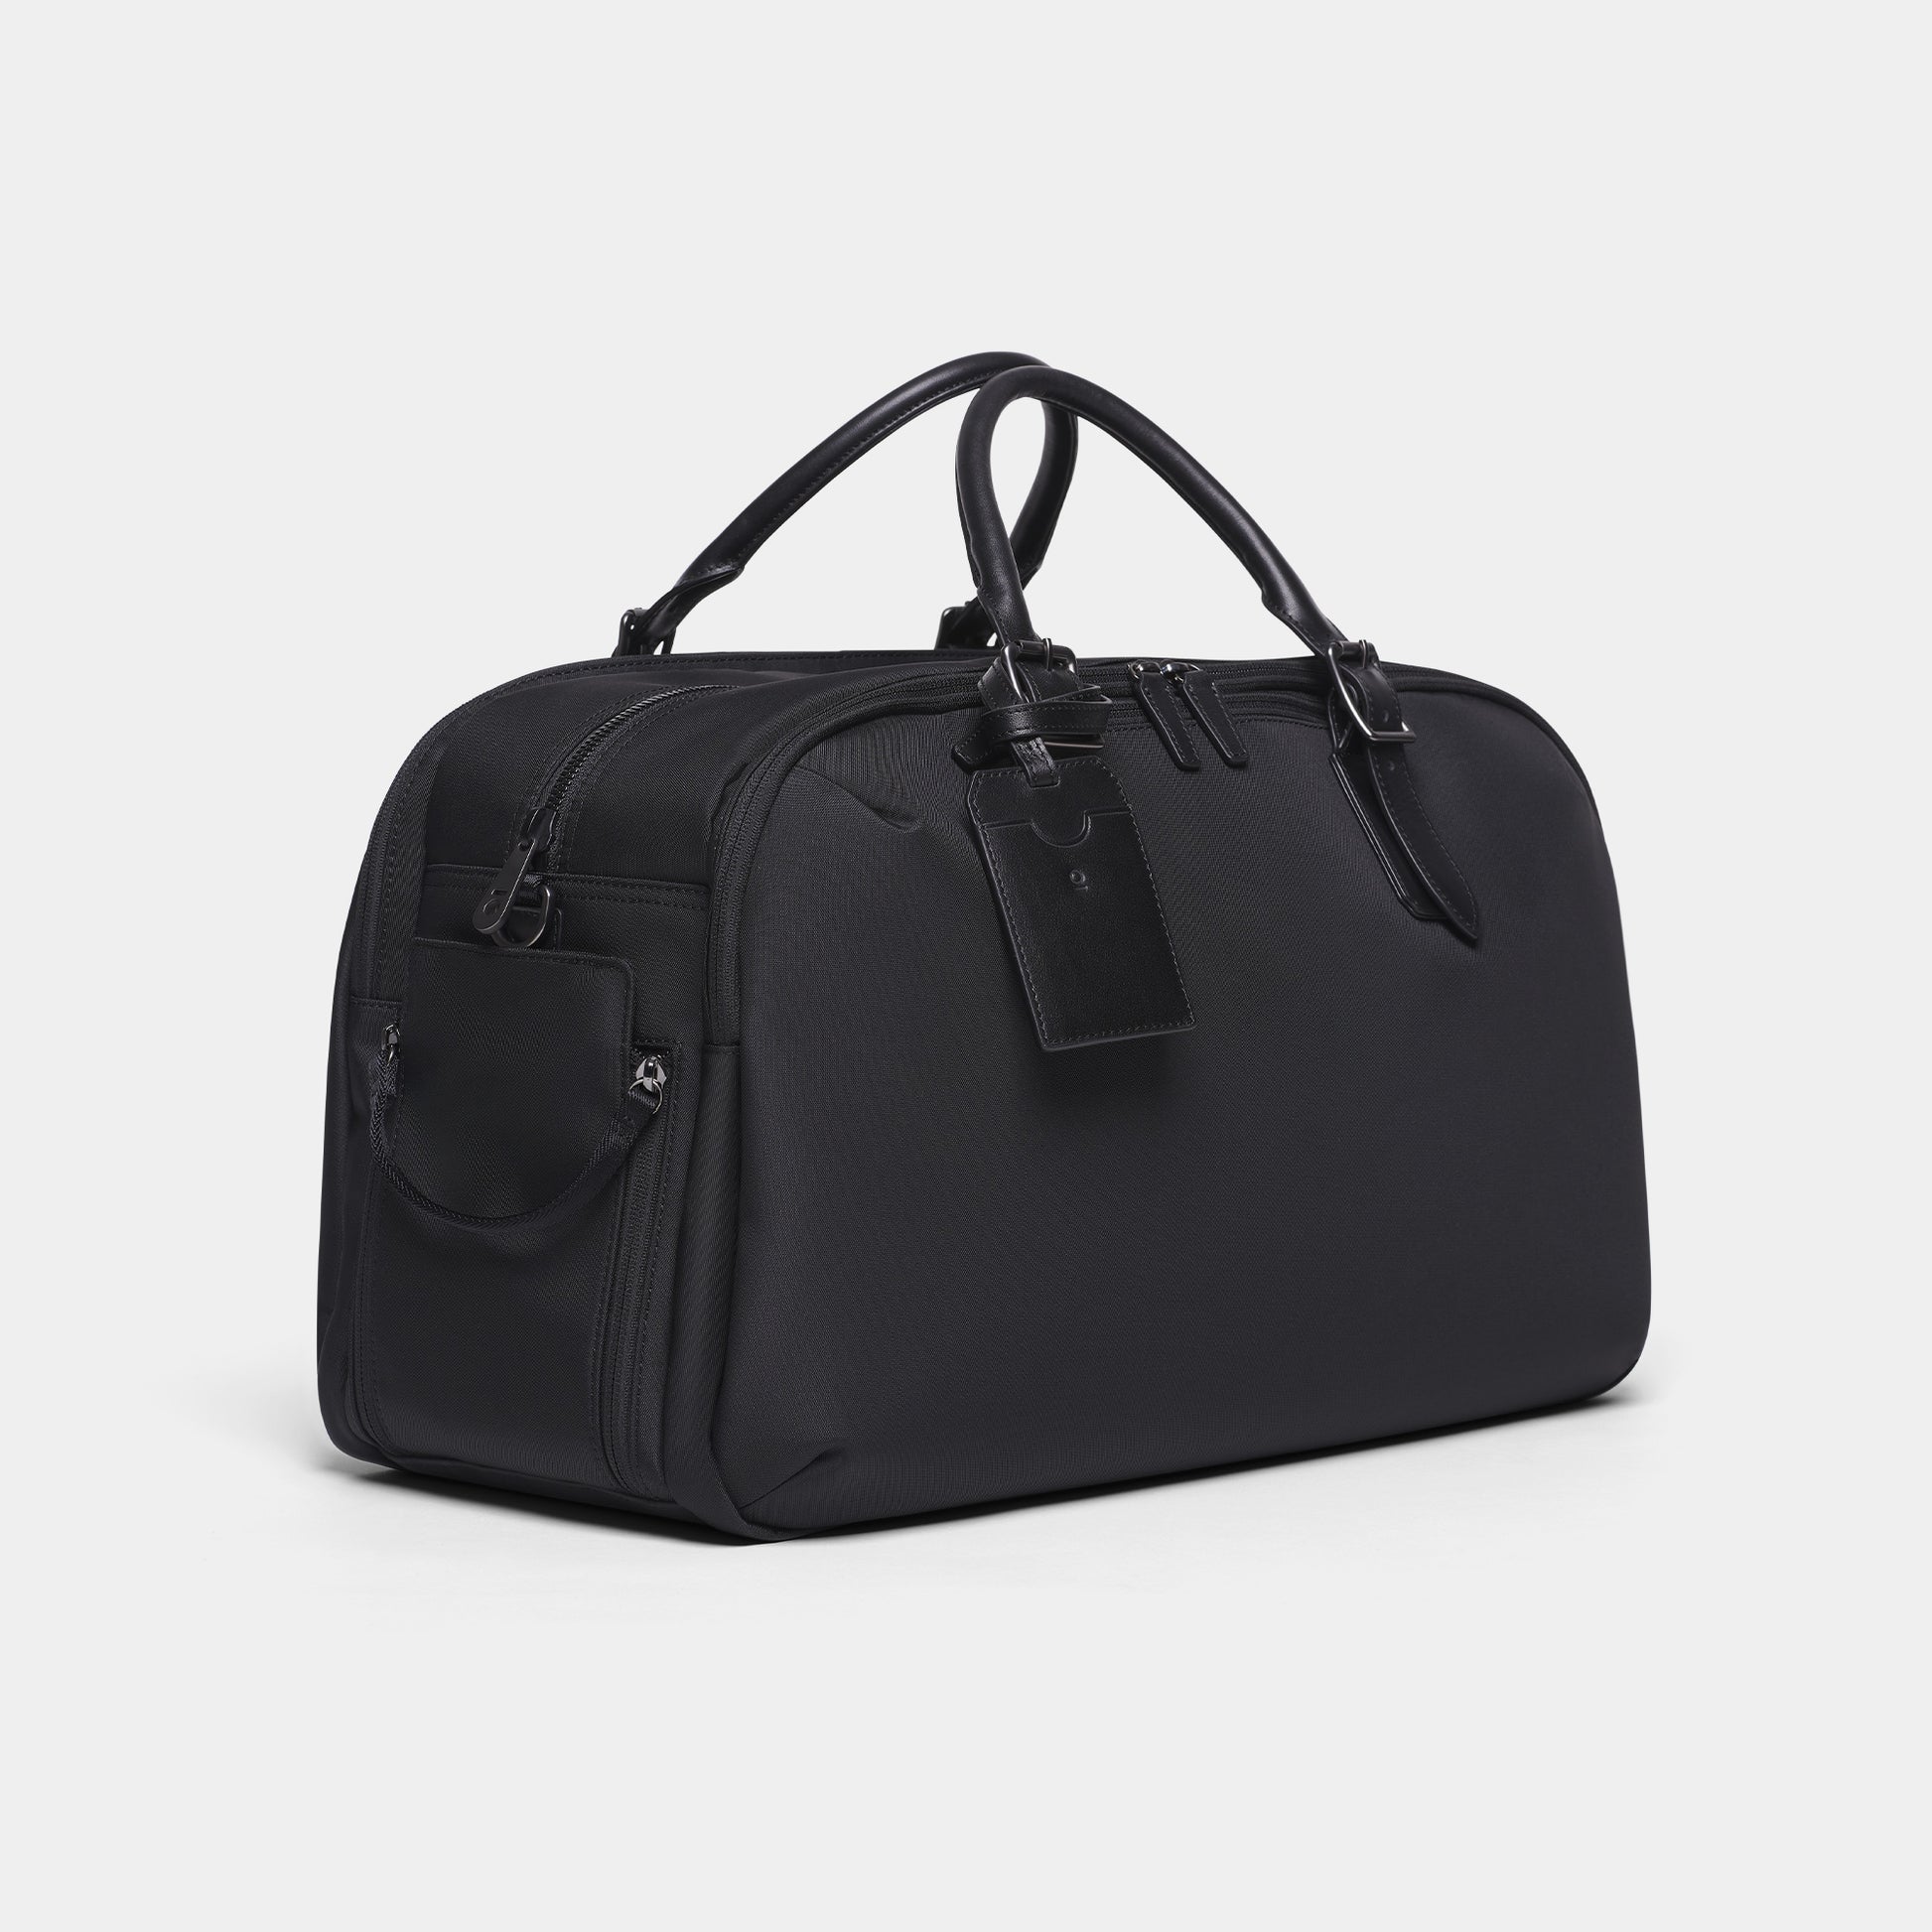 Stuart & Lau Campaign Multipurpose Carryall Bag » Gadget Flow